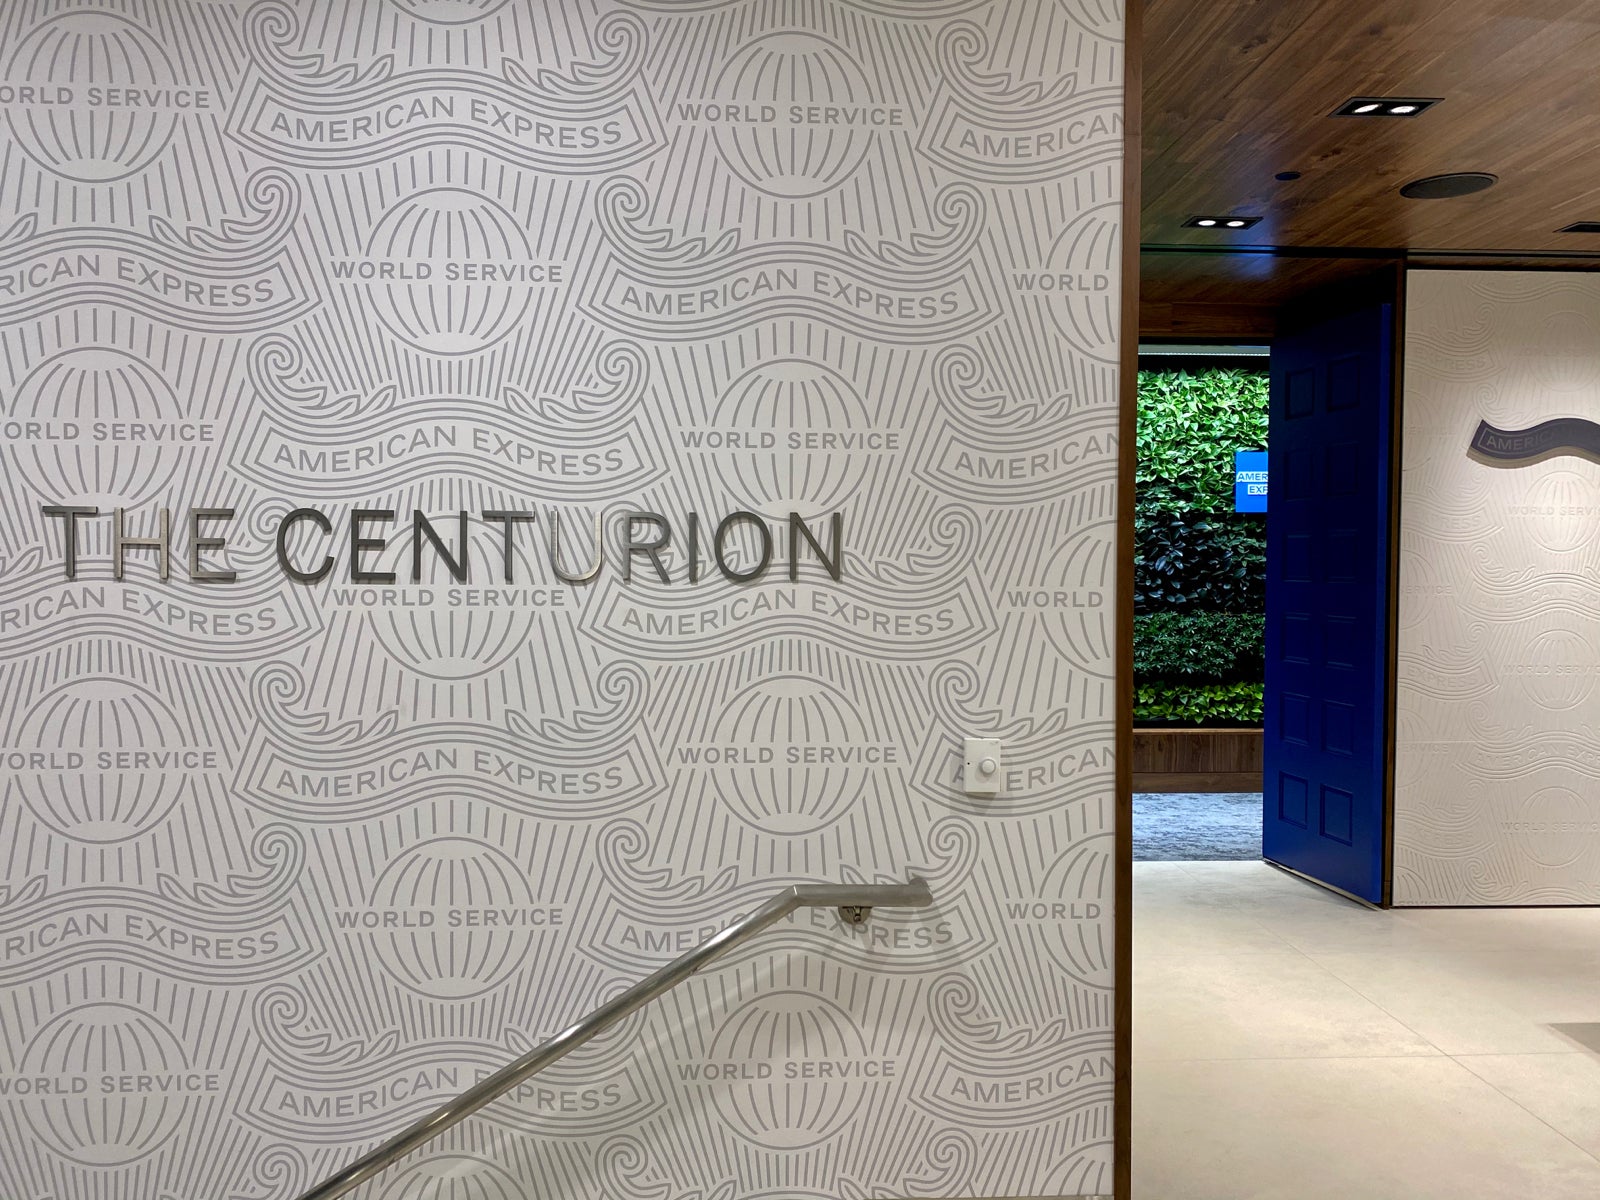 centurion lounge phoenix reopening